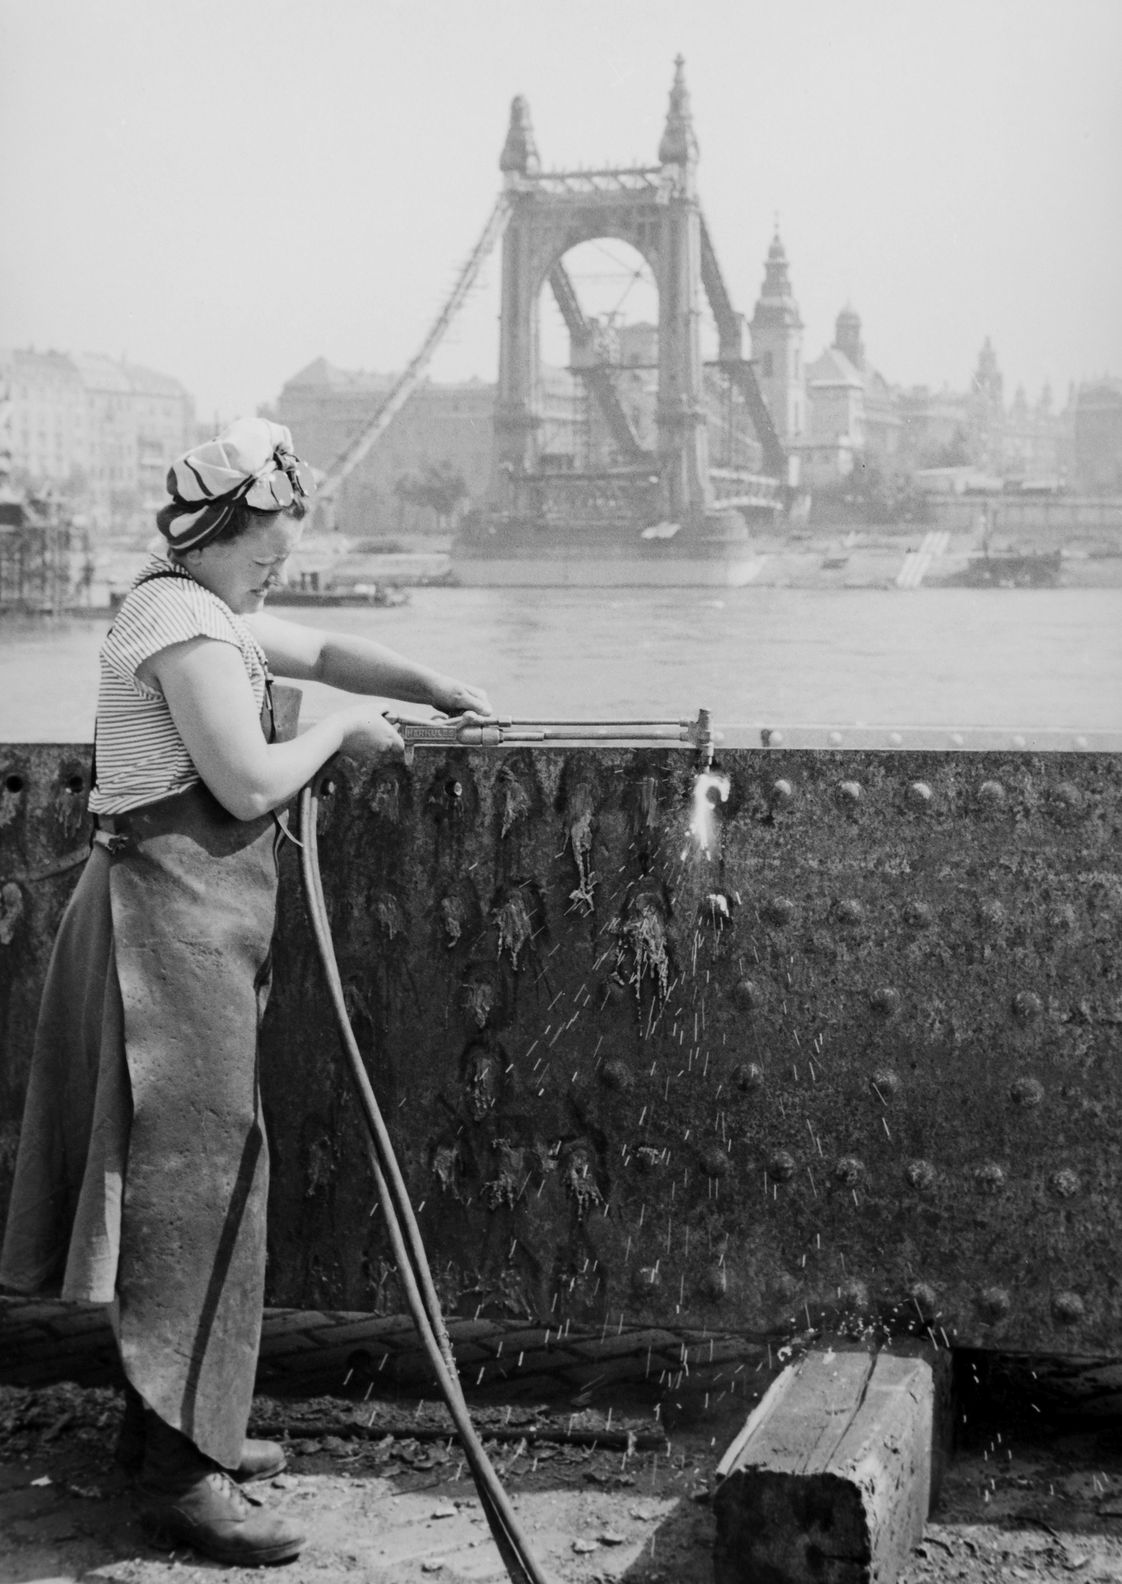 Szakmunkásnő a budai alsó rakparton az Erzsébet híd elemét darabolja, 1949. (Fortepan / Kovács Márton Ernő)